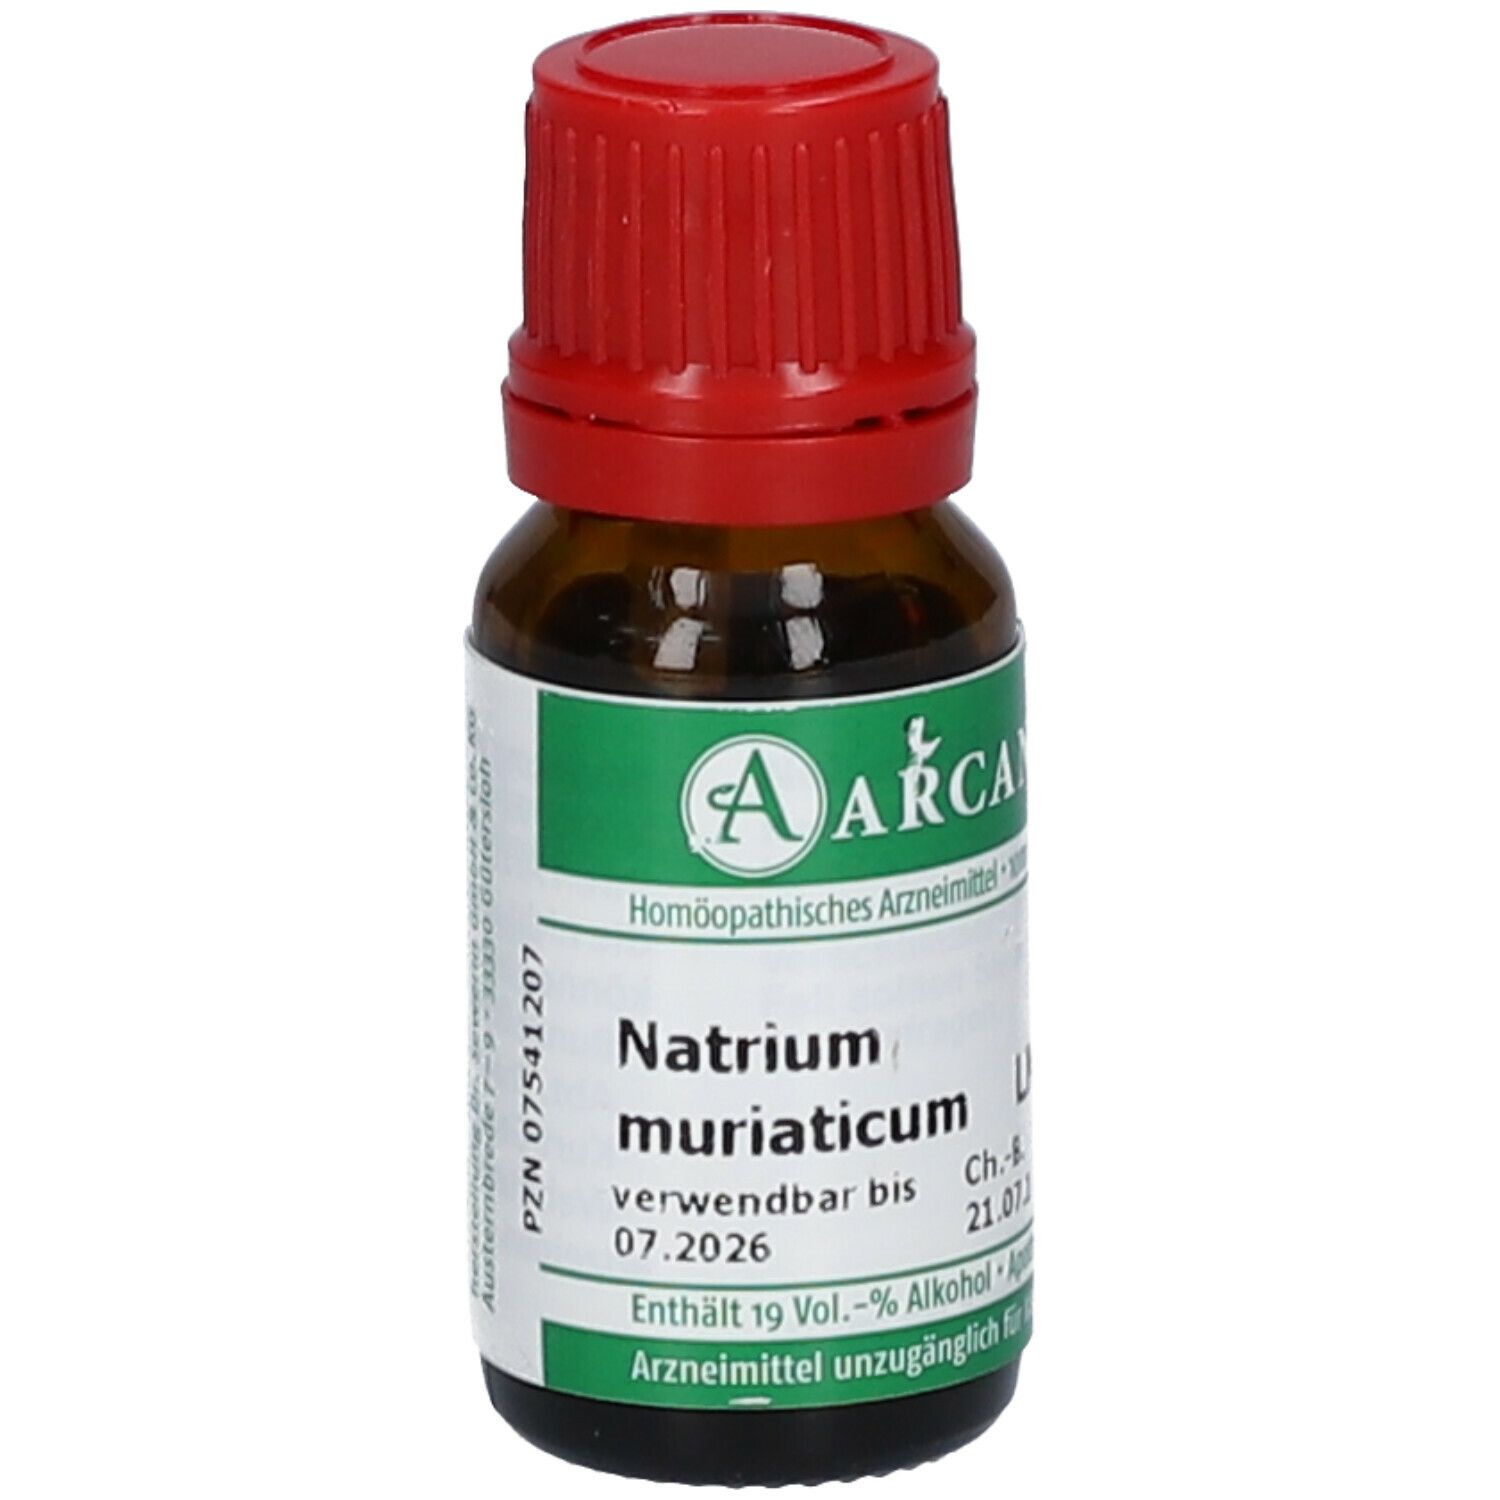 ARCANA® Natrium muriaticum LM VI